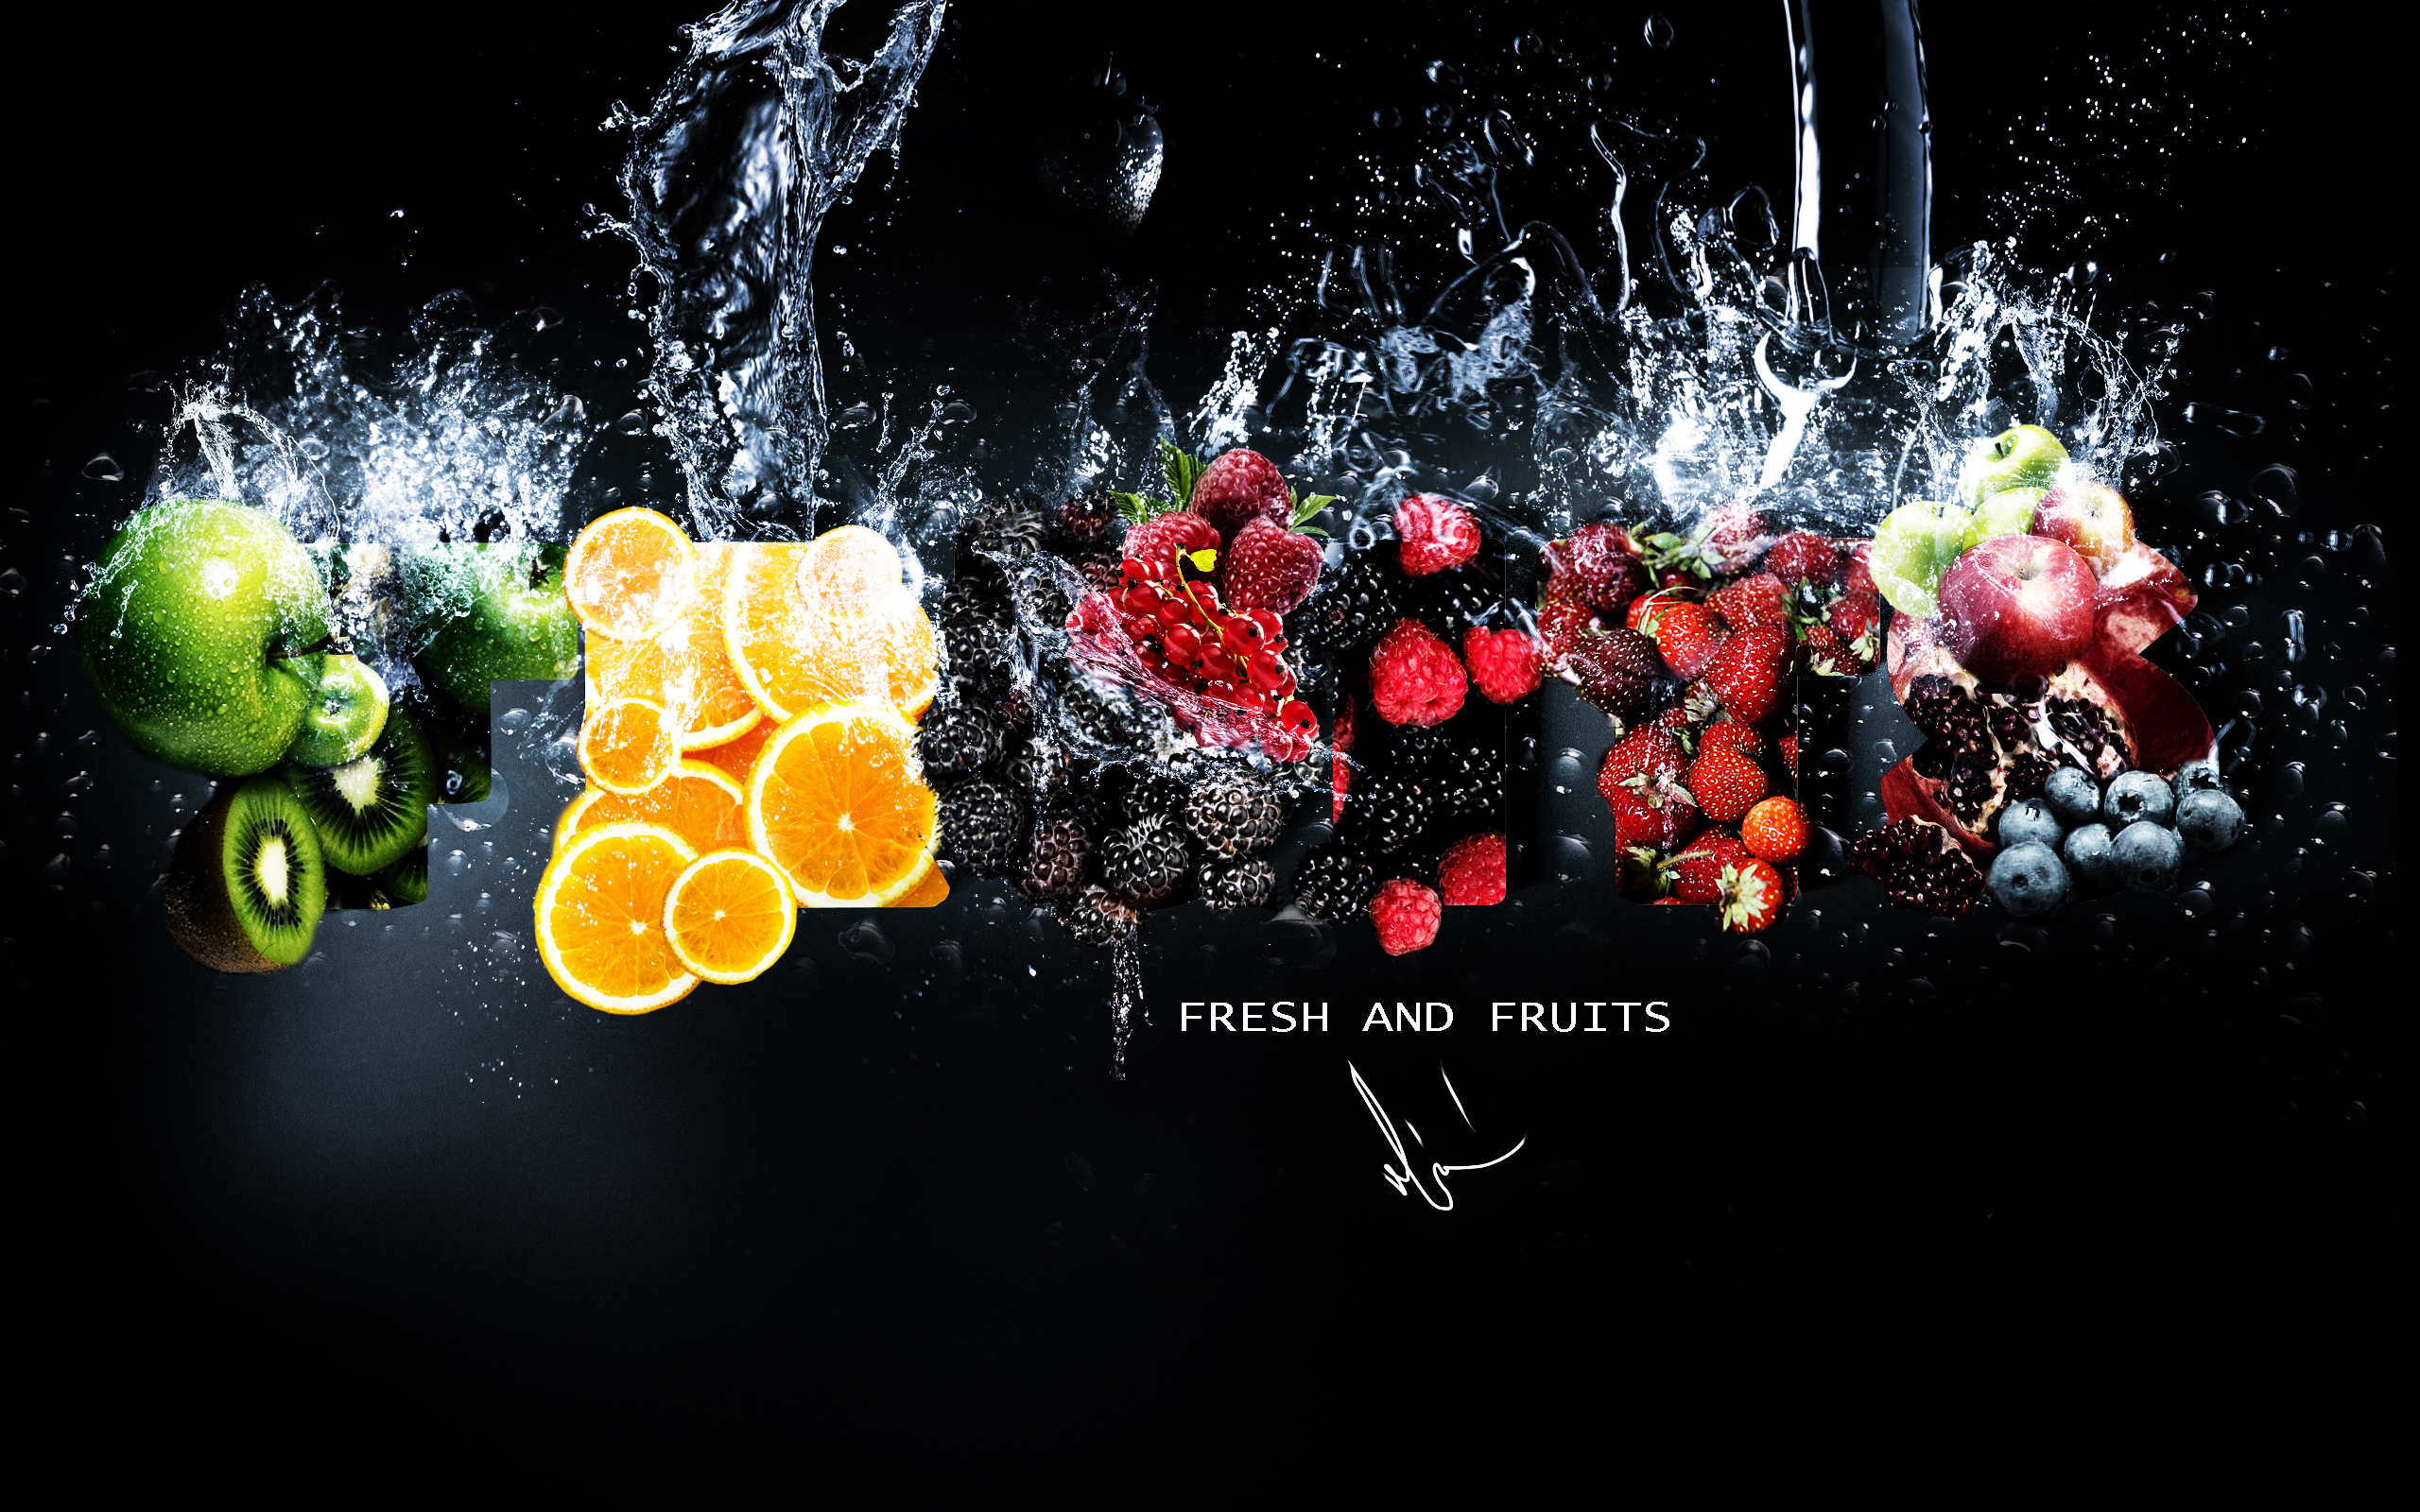 Фрукты в брызгах воды: яблоки, киви, апельсины, малина, клубника, ежевика, гранат (fresh and fruits)